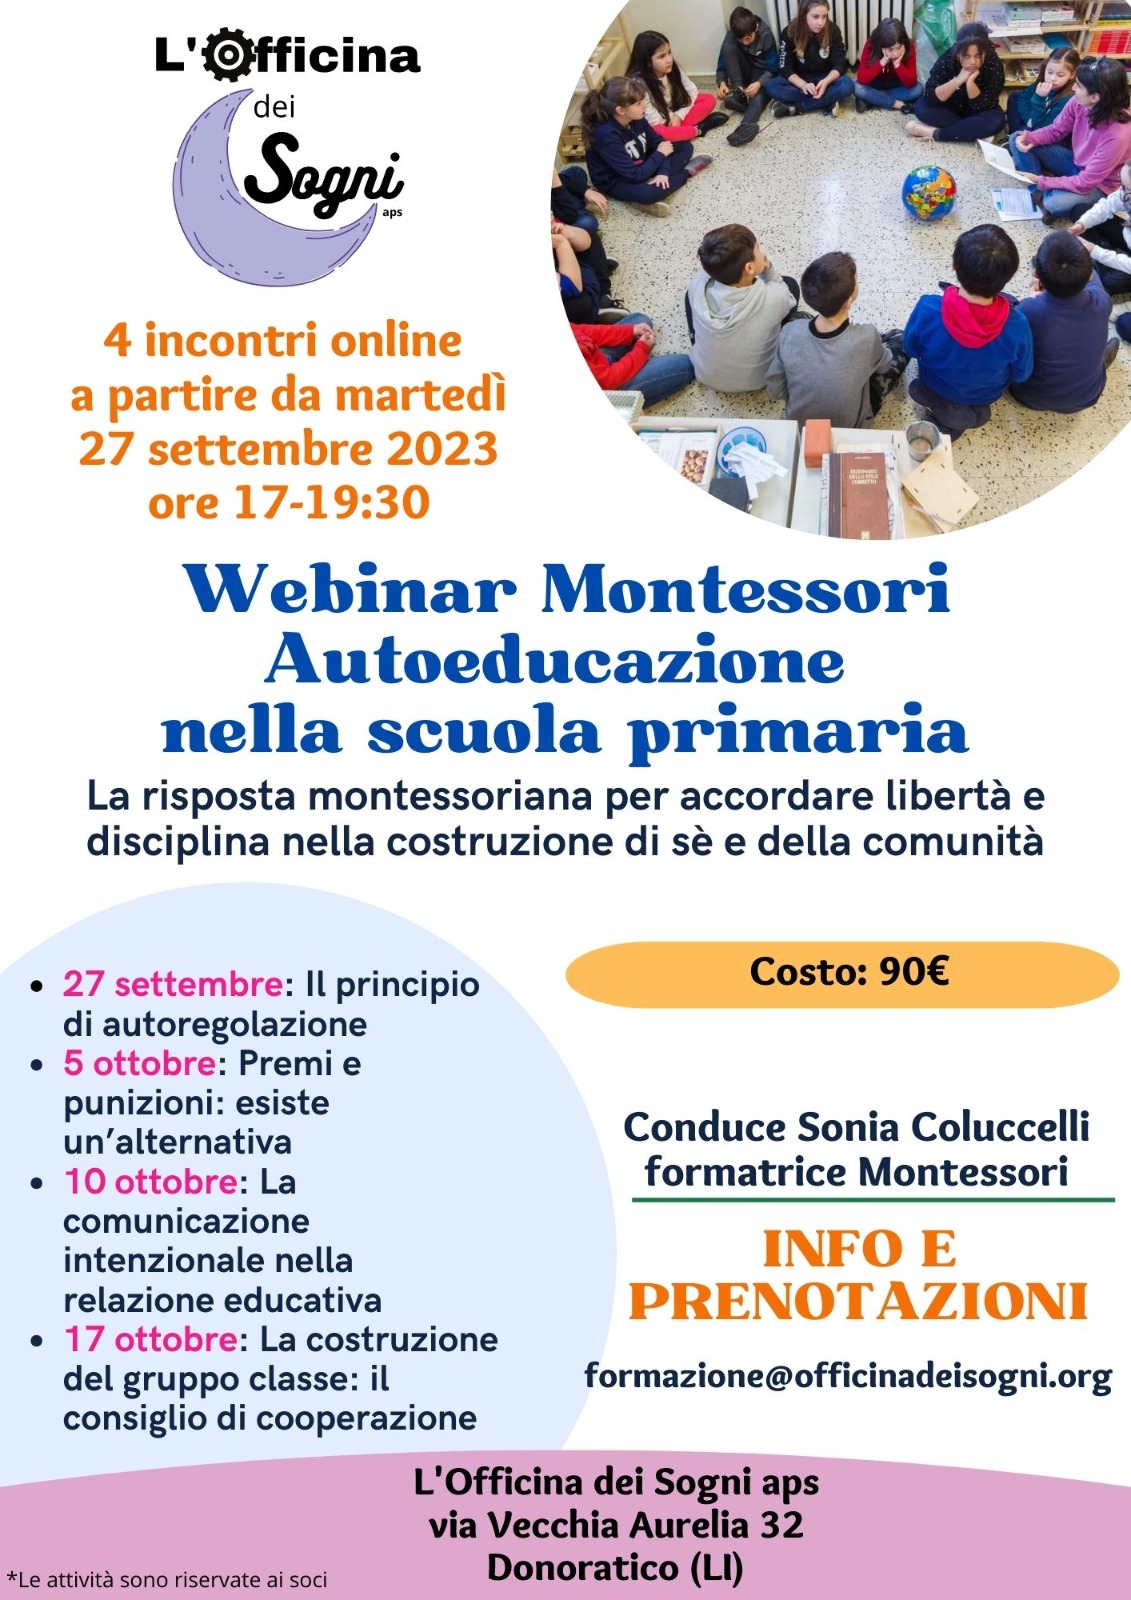 Autoeducazione nella scuola primaria - Webinar Montessori 2023/2024